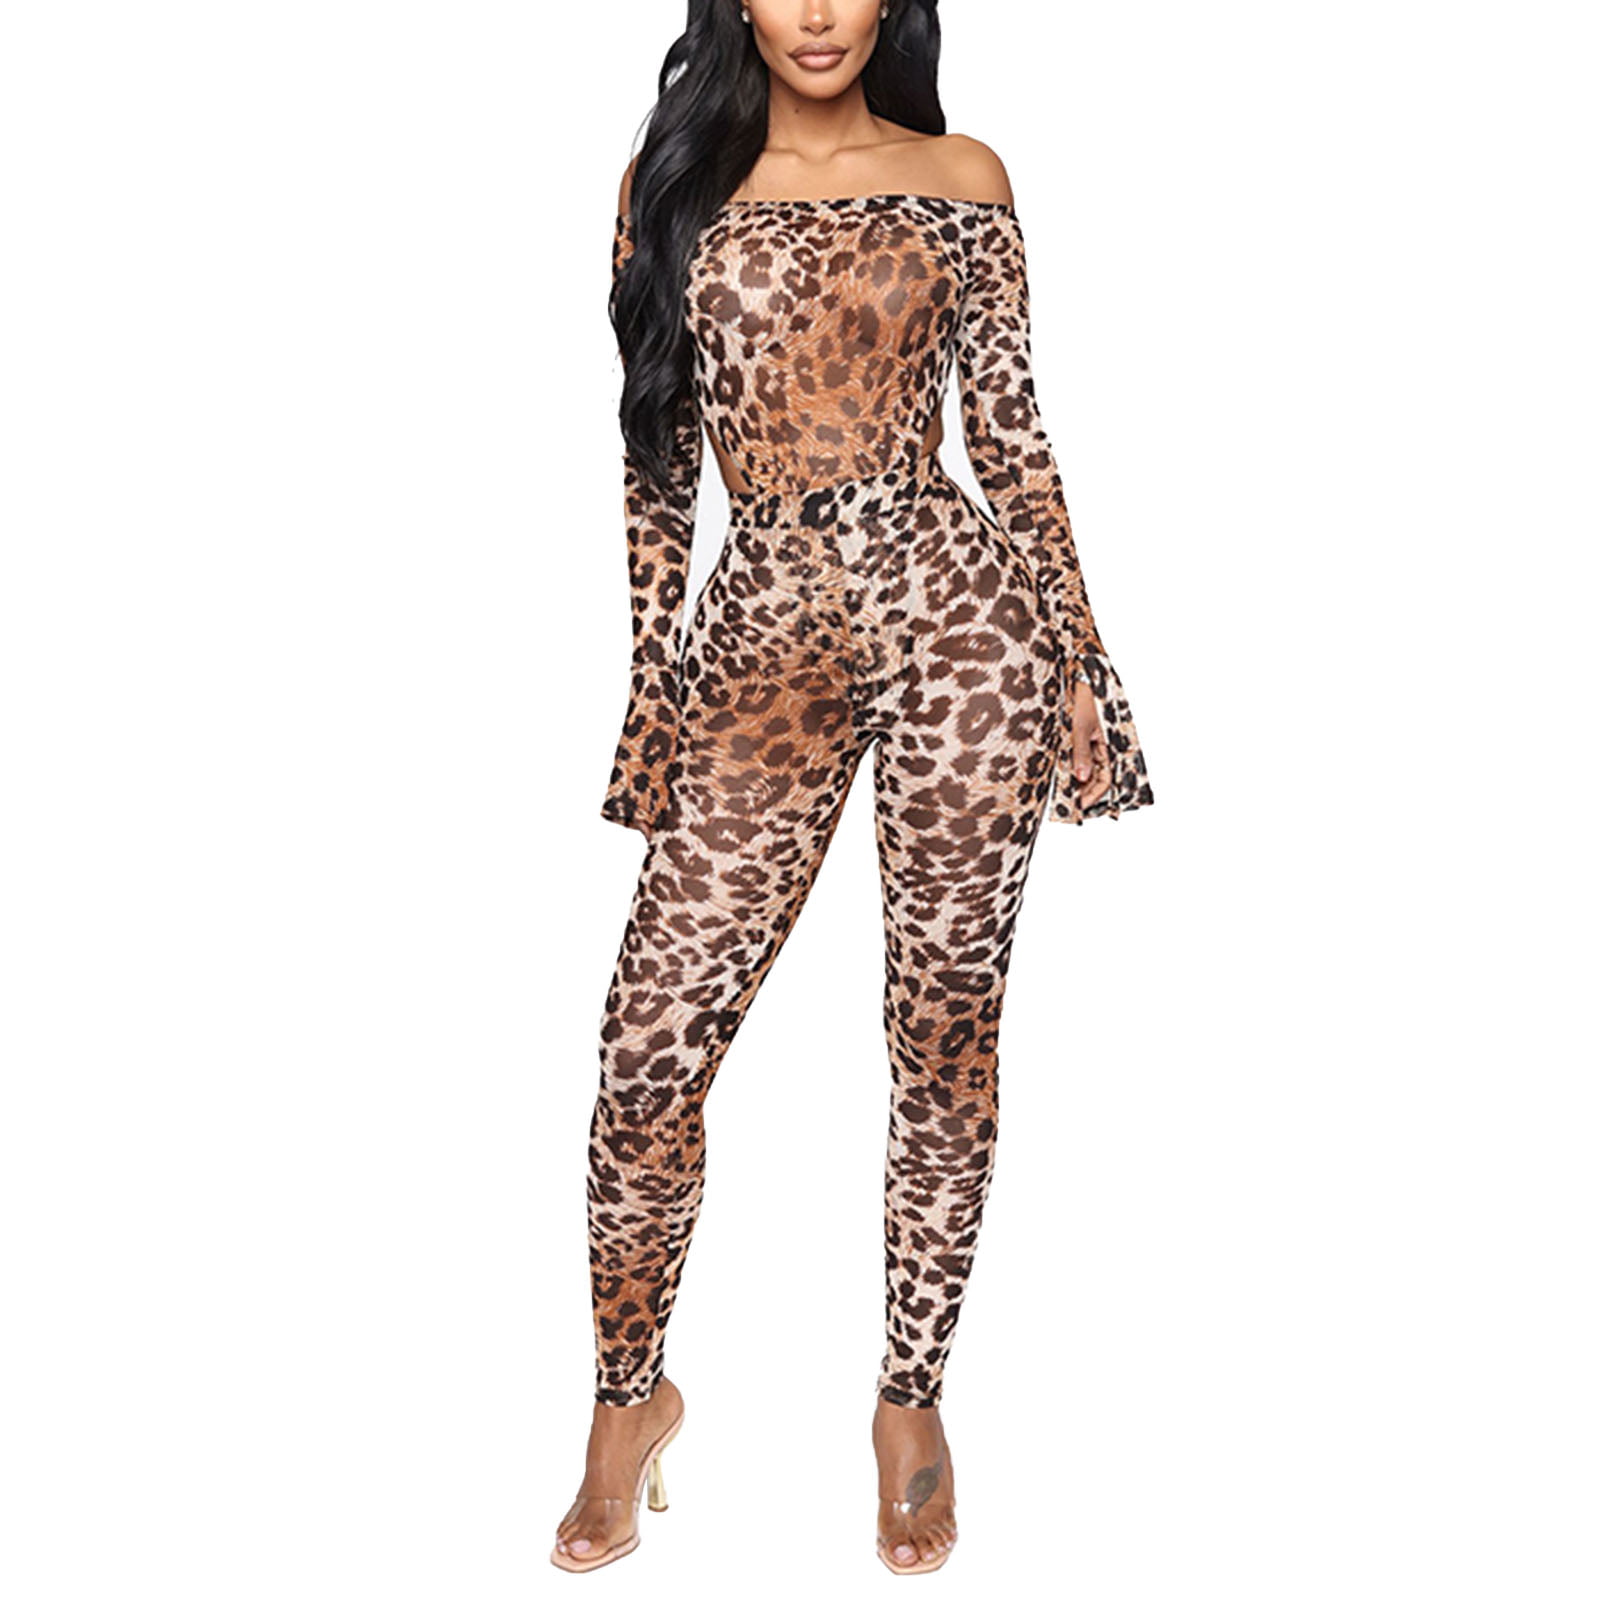 2 piece leopard outfit